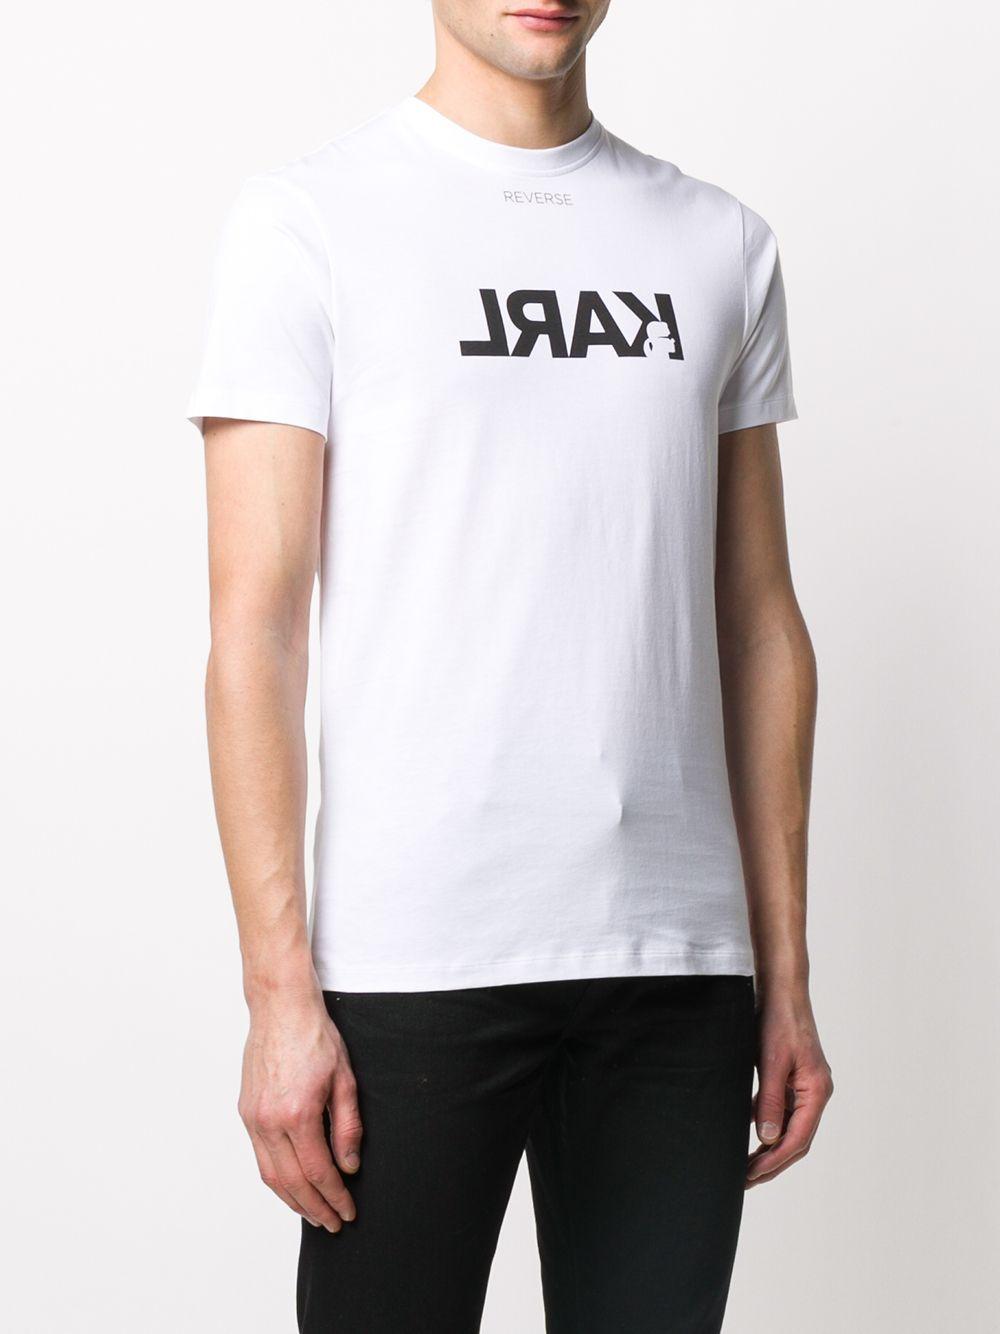 Karl Lagerfeld Cotton Reverse Logo T-shirt in White for Men - Lyst